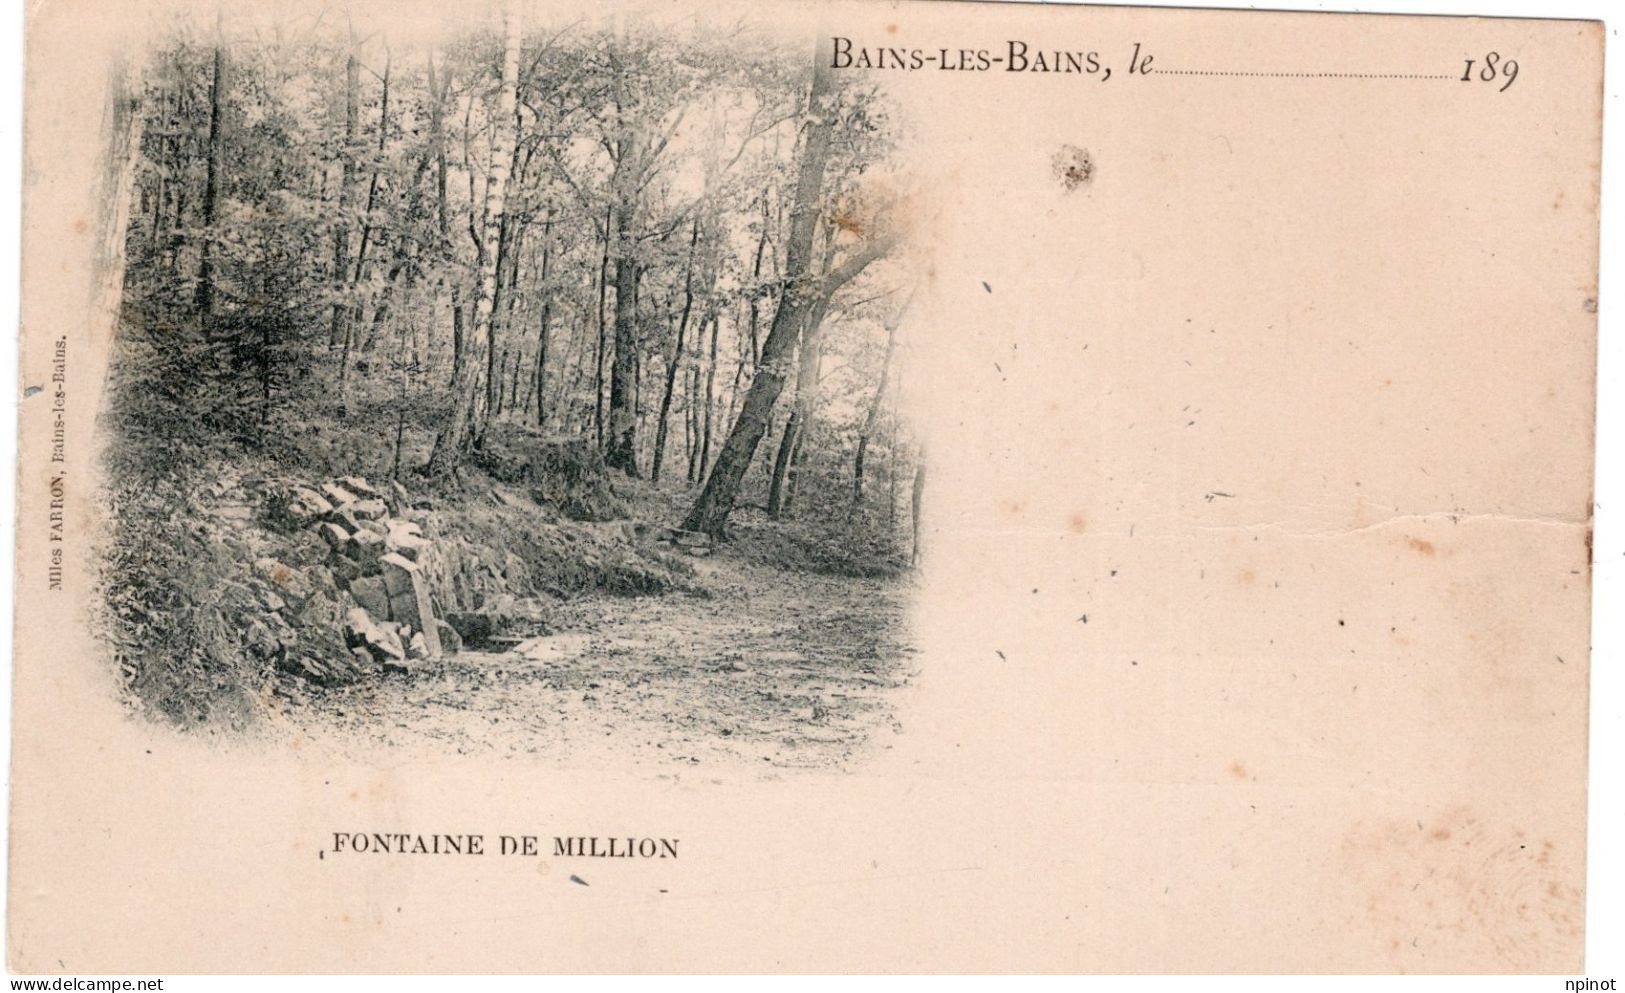 C P A  - 88 - BAINS LES BAINS  -   PIONNIERE DE 1899 Cachet Postal Au Dos   - Fontaine De Million - Bains Les Bains